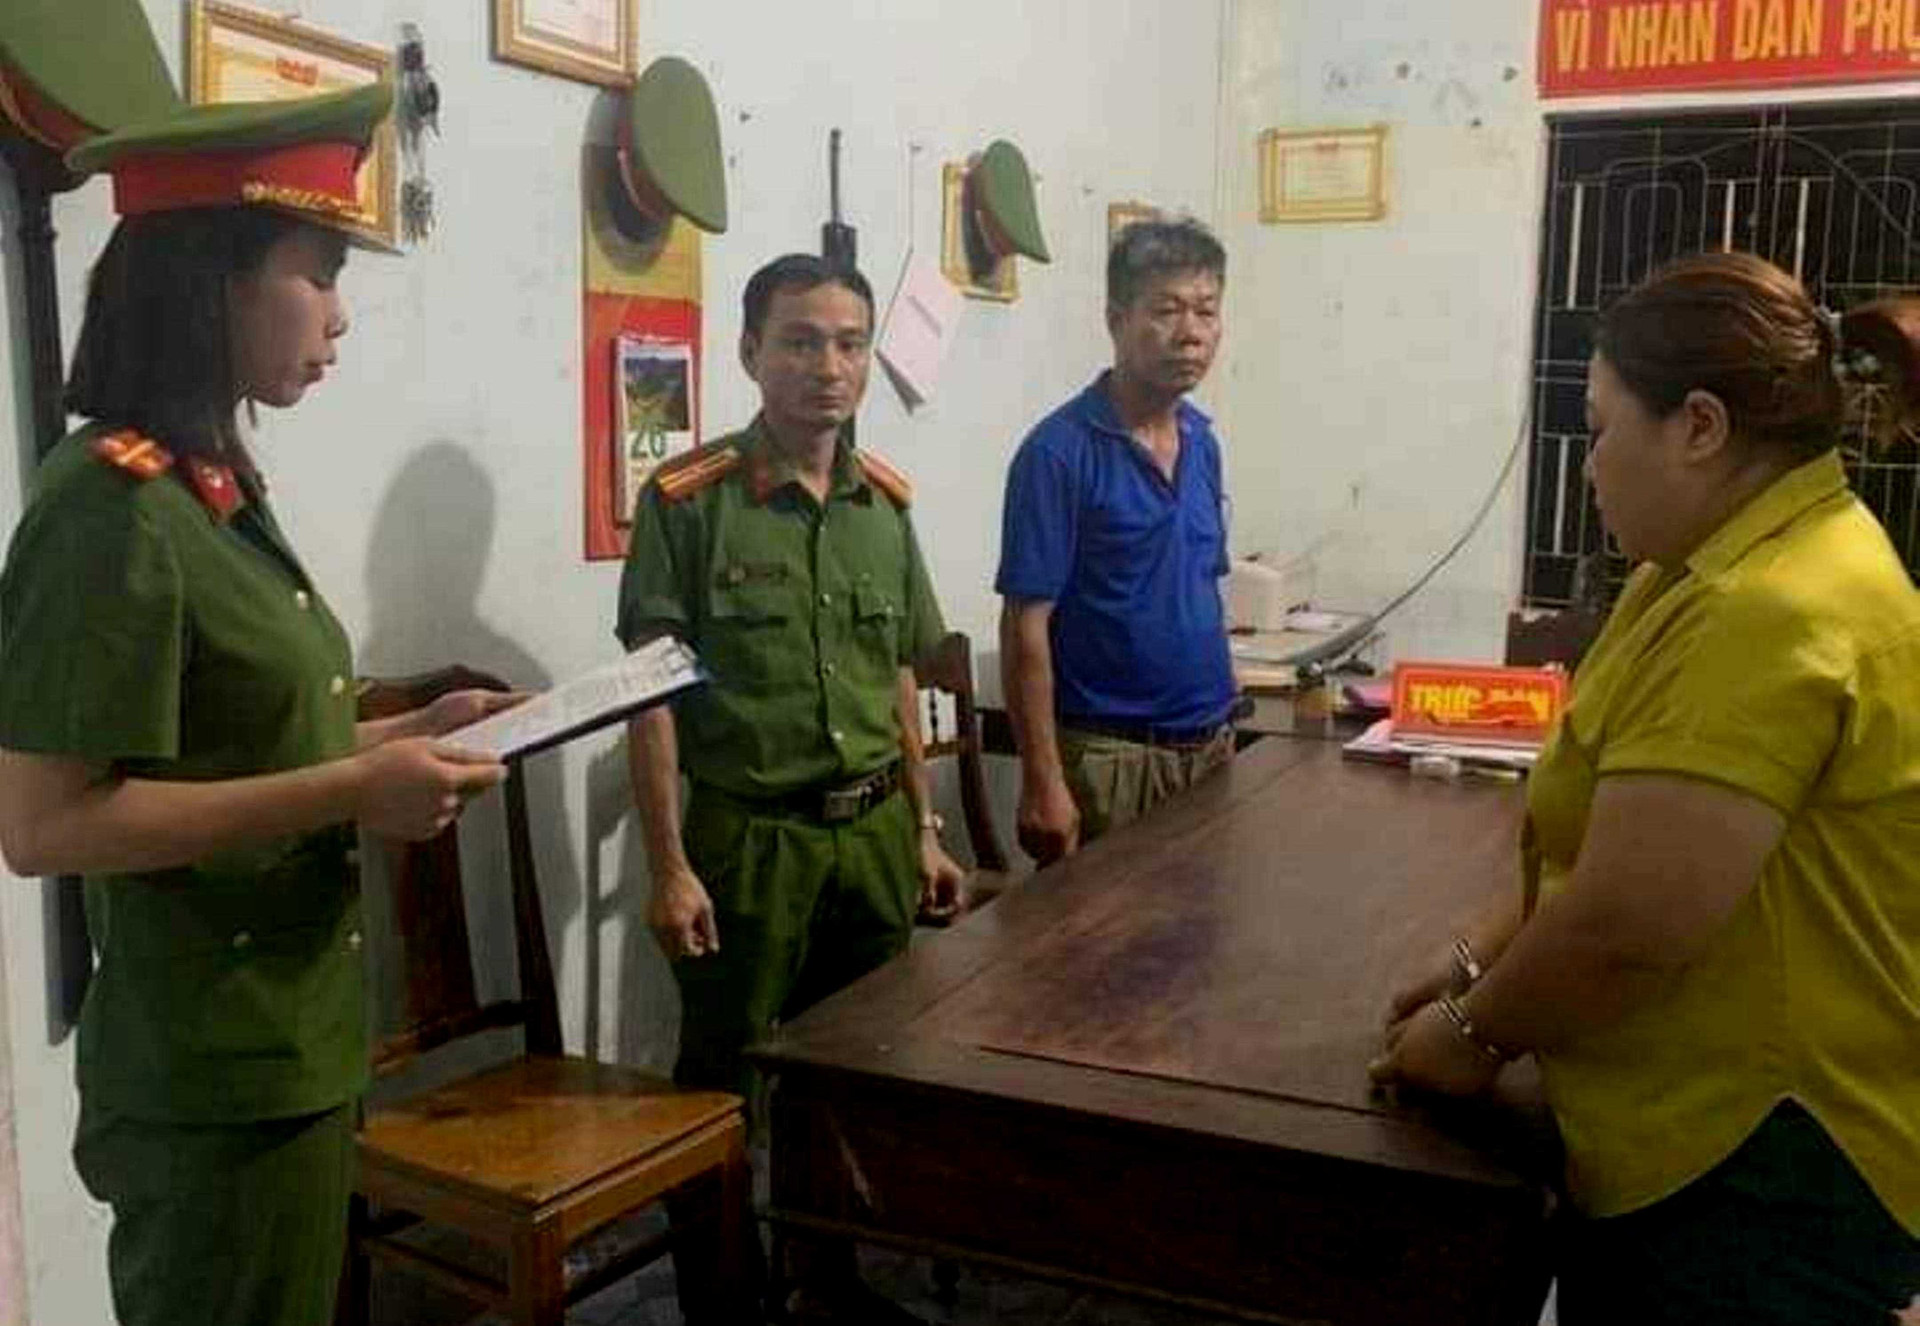 Công an huyện Cam Lộ đọc lệnh giữ người trong trường hợp khẩn cấp với Thuận để làm rõ hành vi làm sổ đỏ giả - Ảnh: G.C.